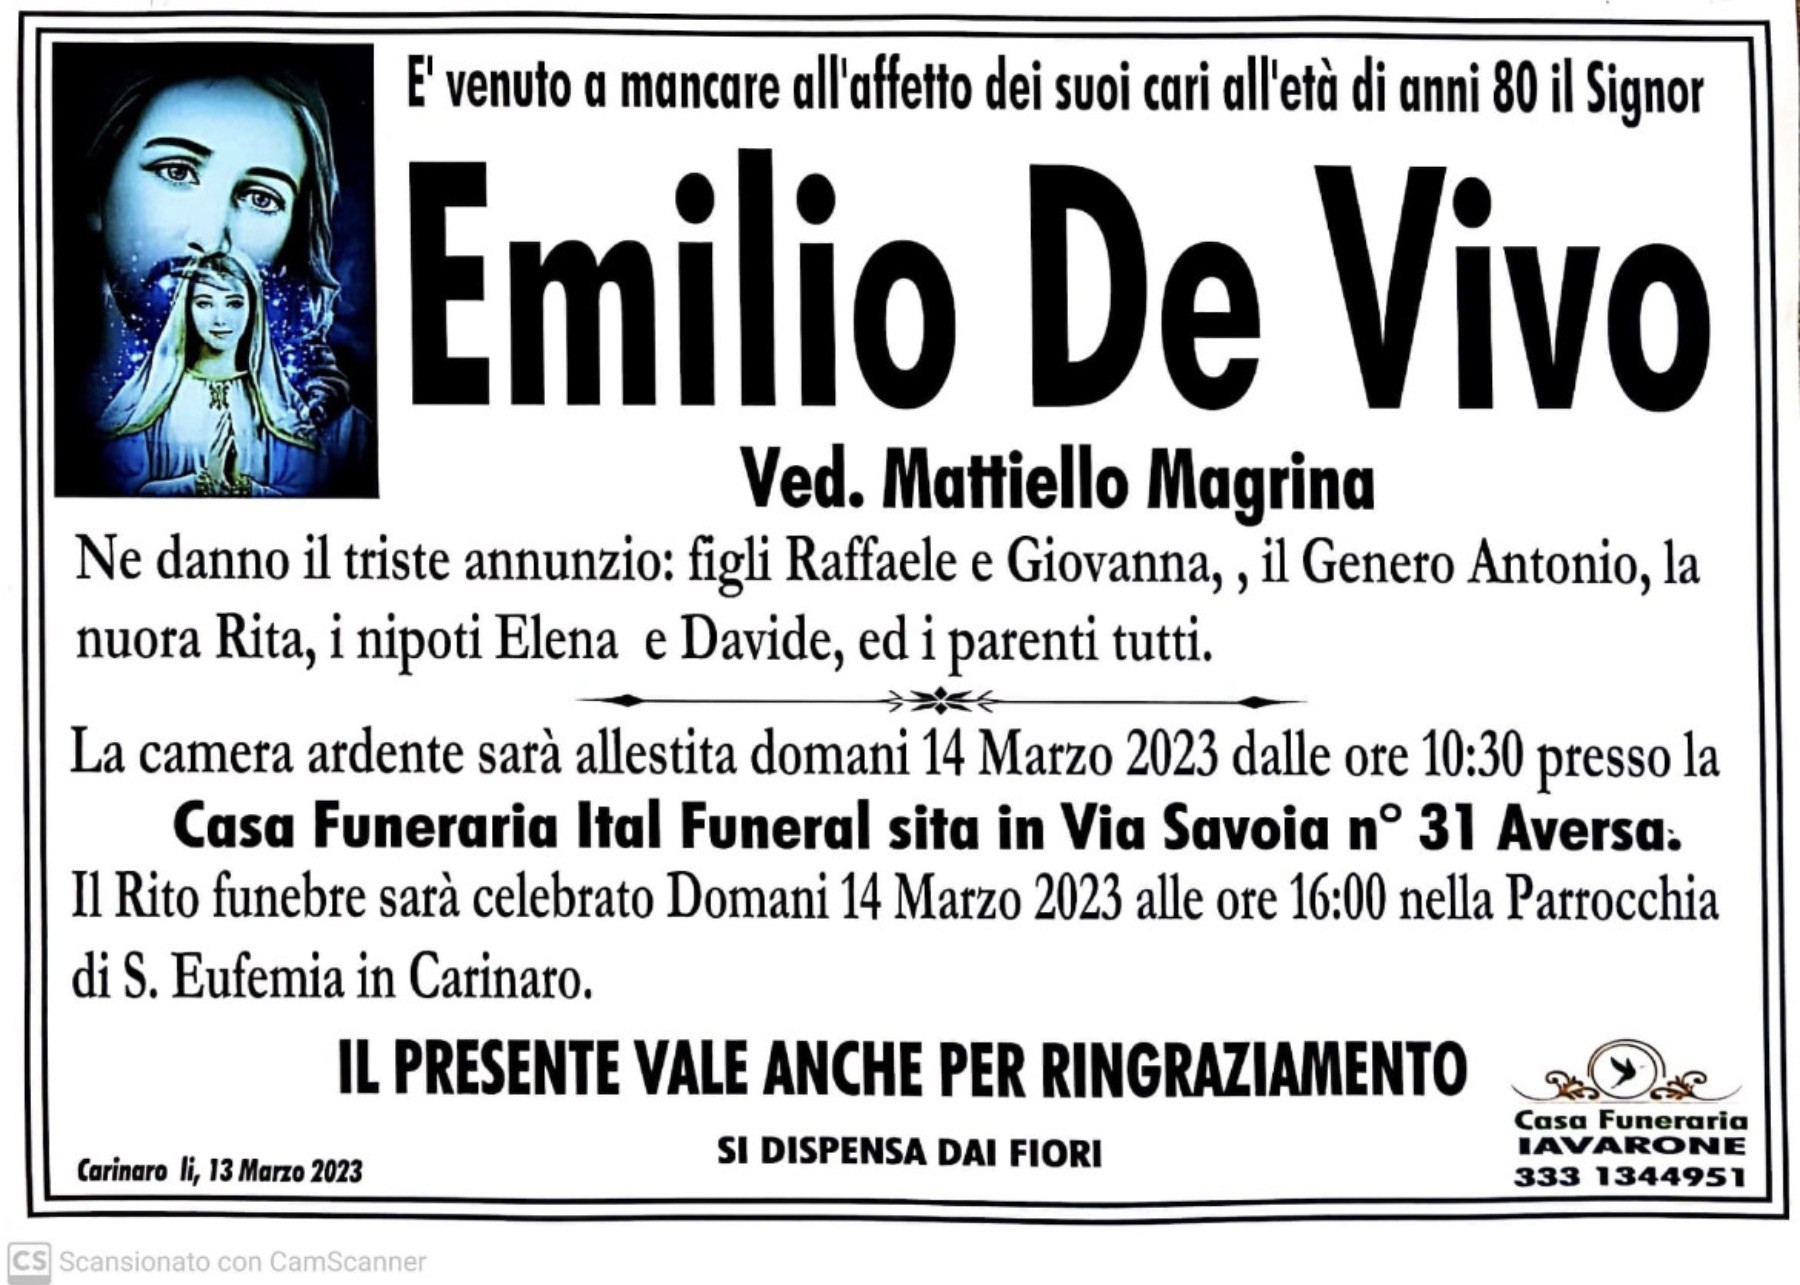 Emilio De Vivo